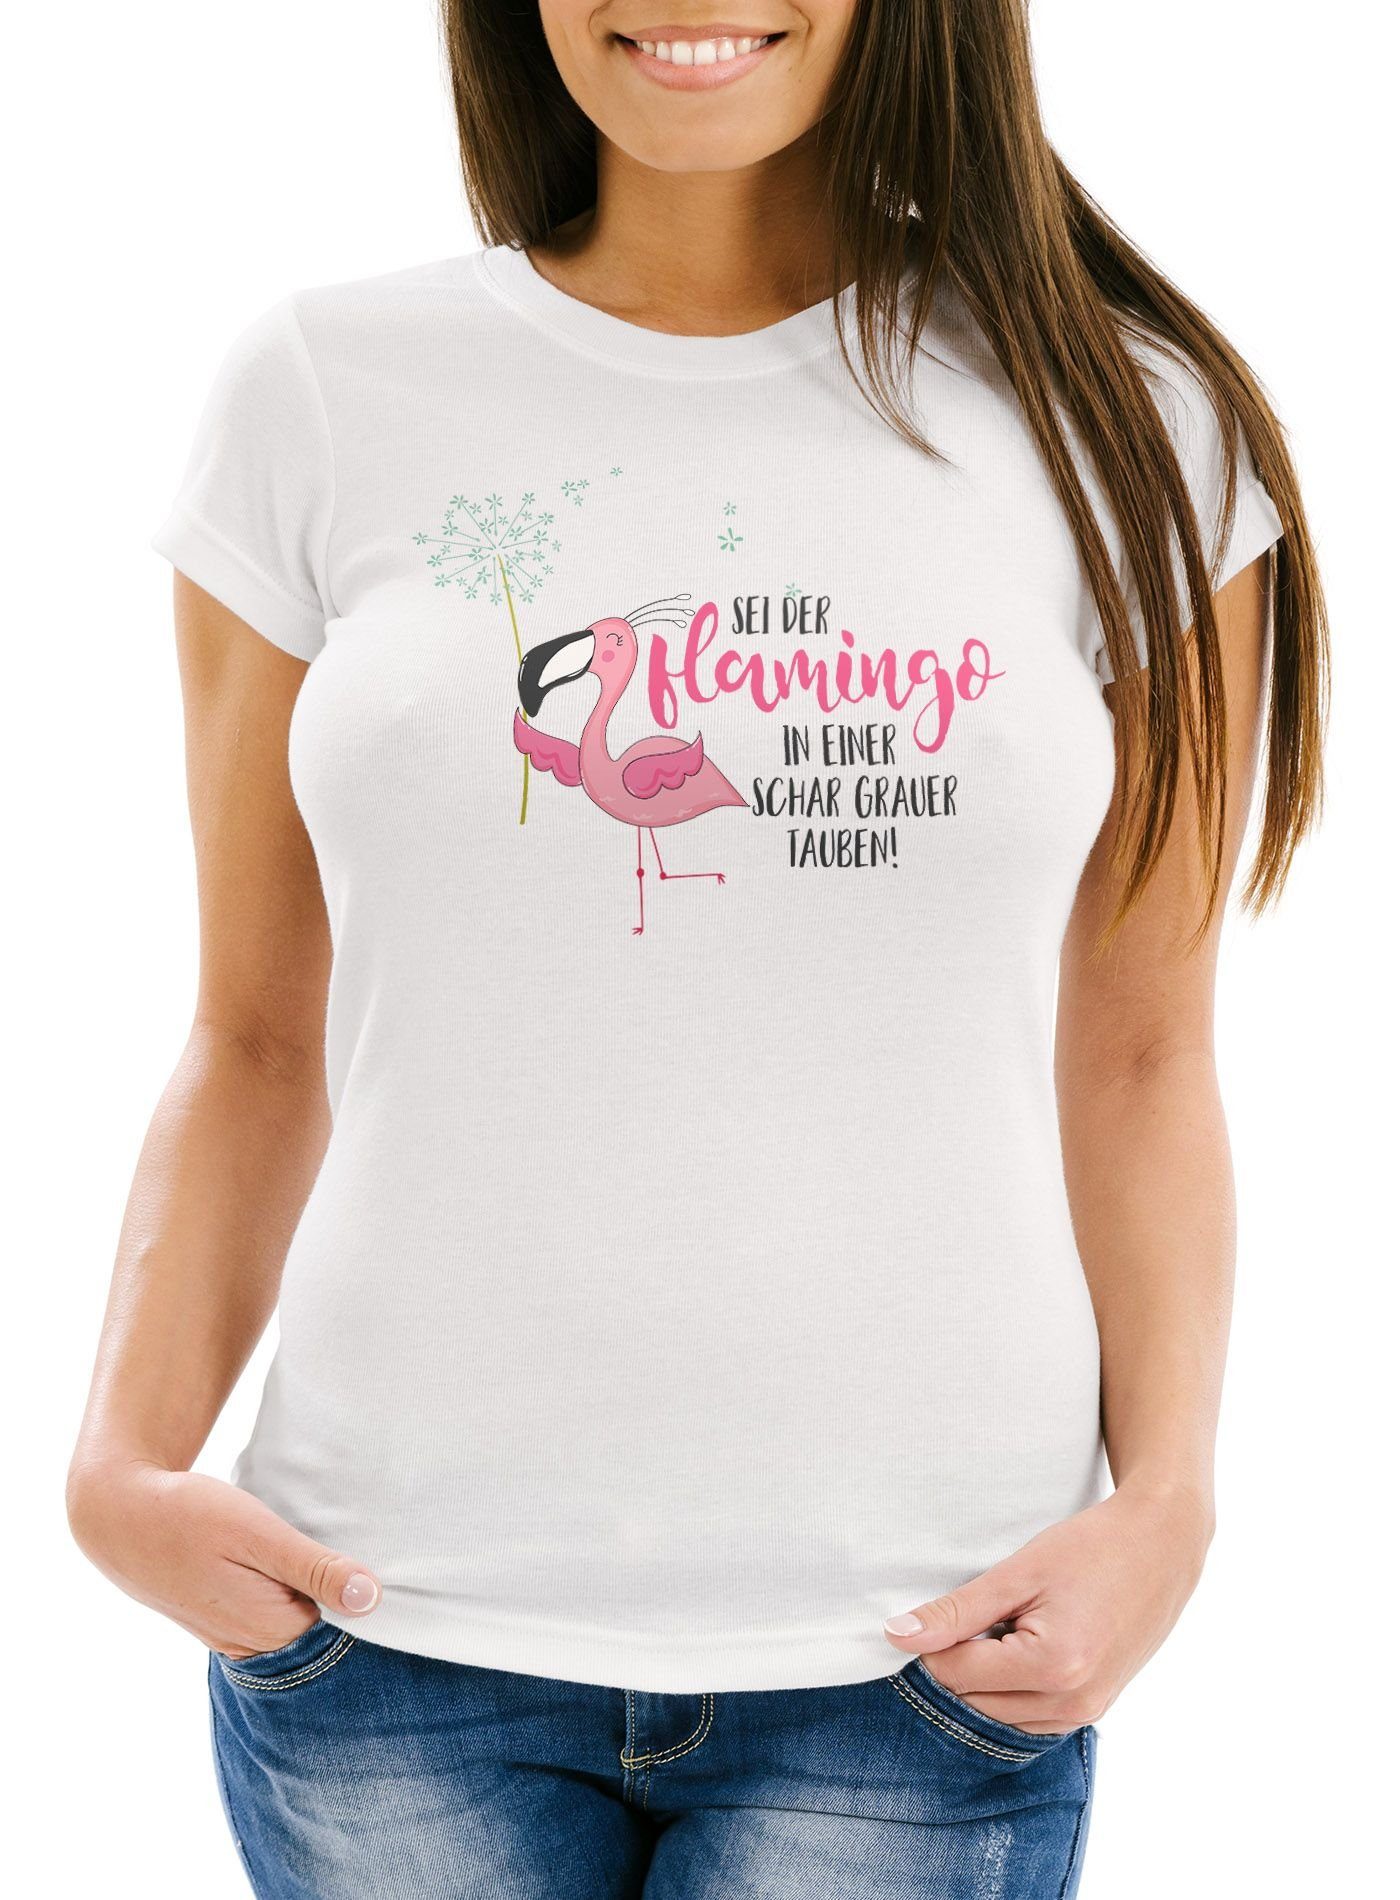 Moonworks® Pusteblume Flamingo grauer weiß sei MoonWorks Flamingo T-Shirt Schar Print-Shirt der einer Fit in mit Spruch Damen Slim Tauben Print